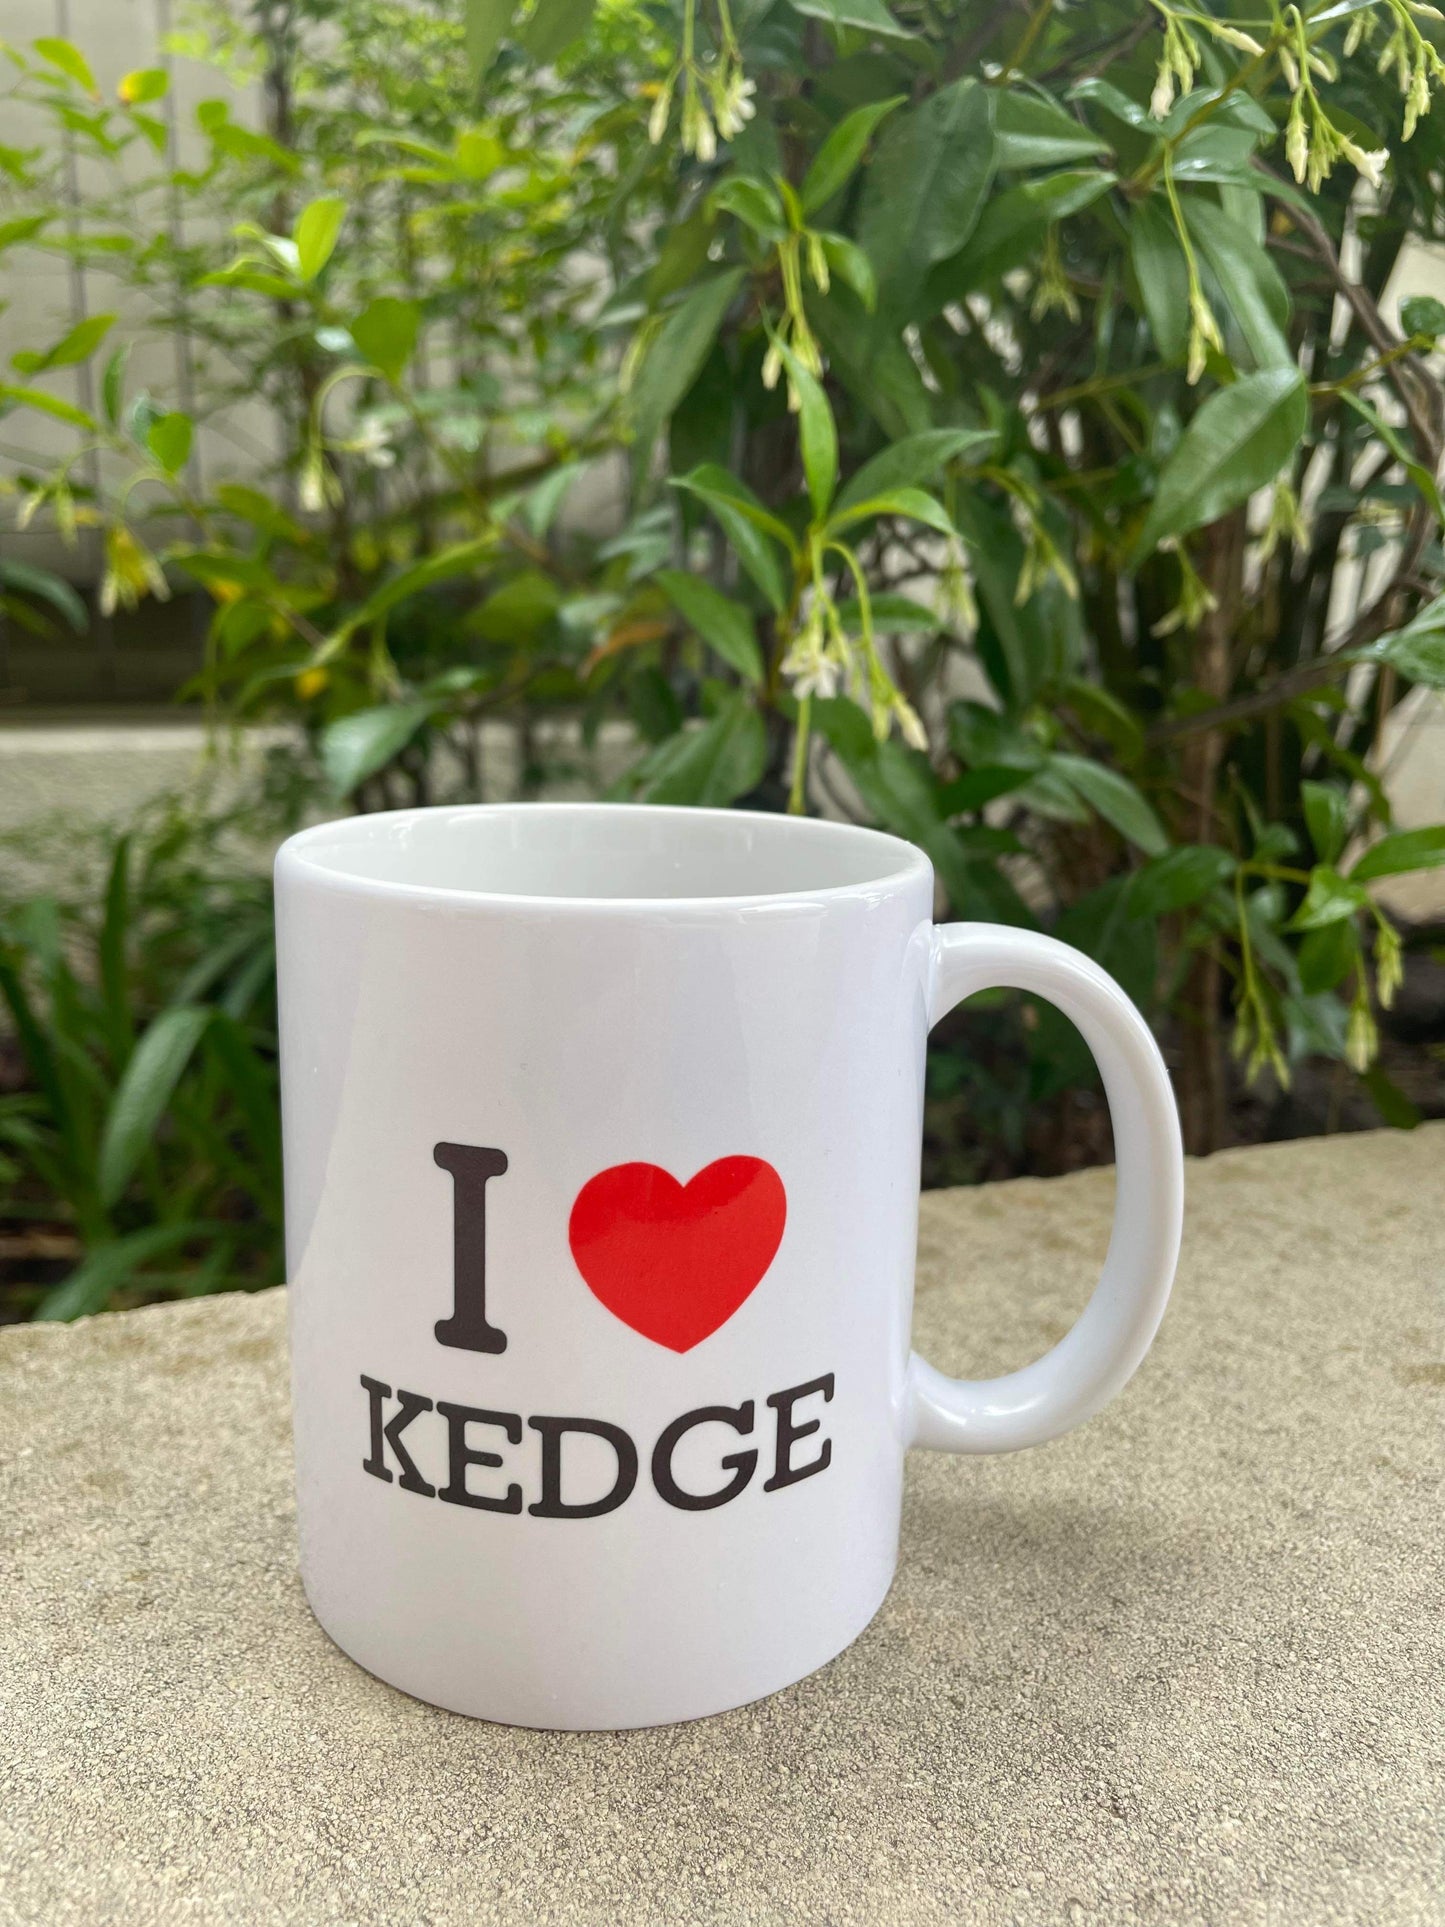 I LOVE KEDGE MUG